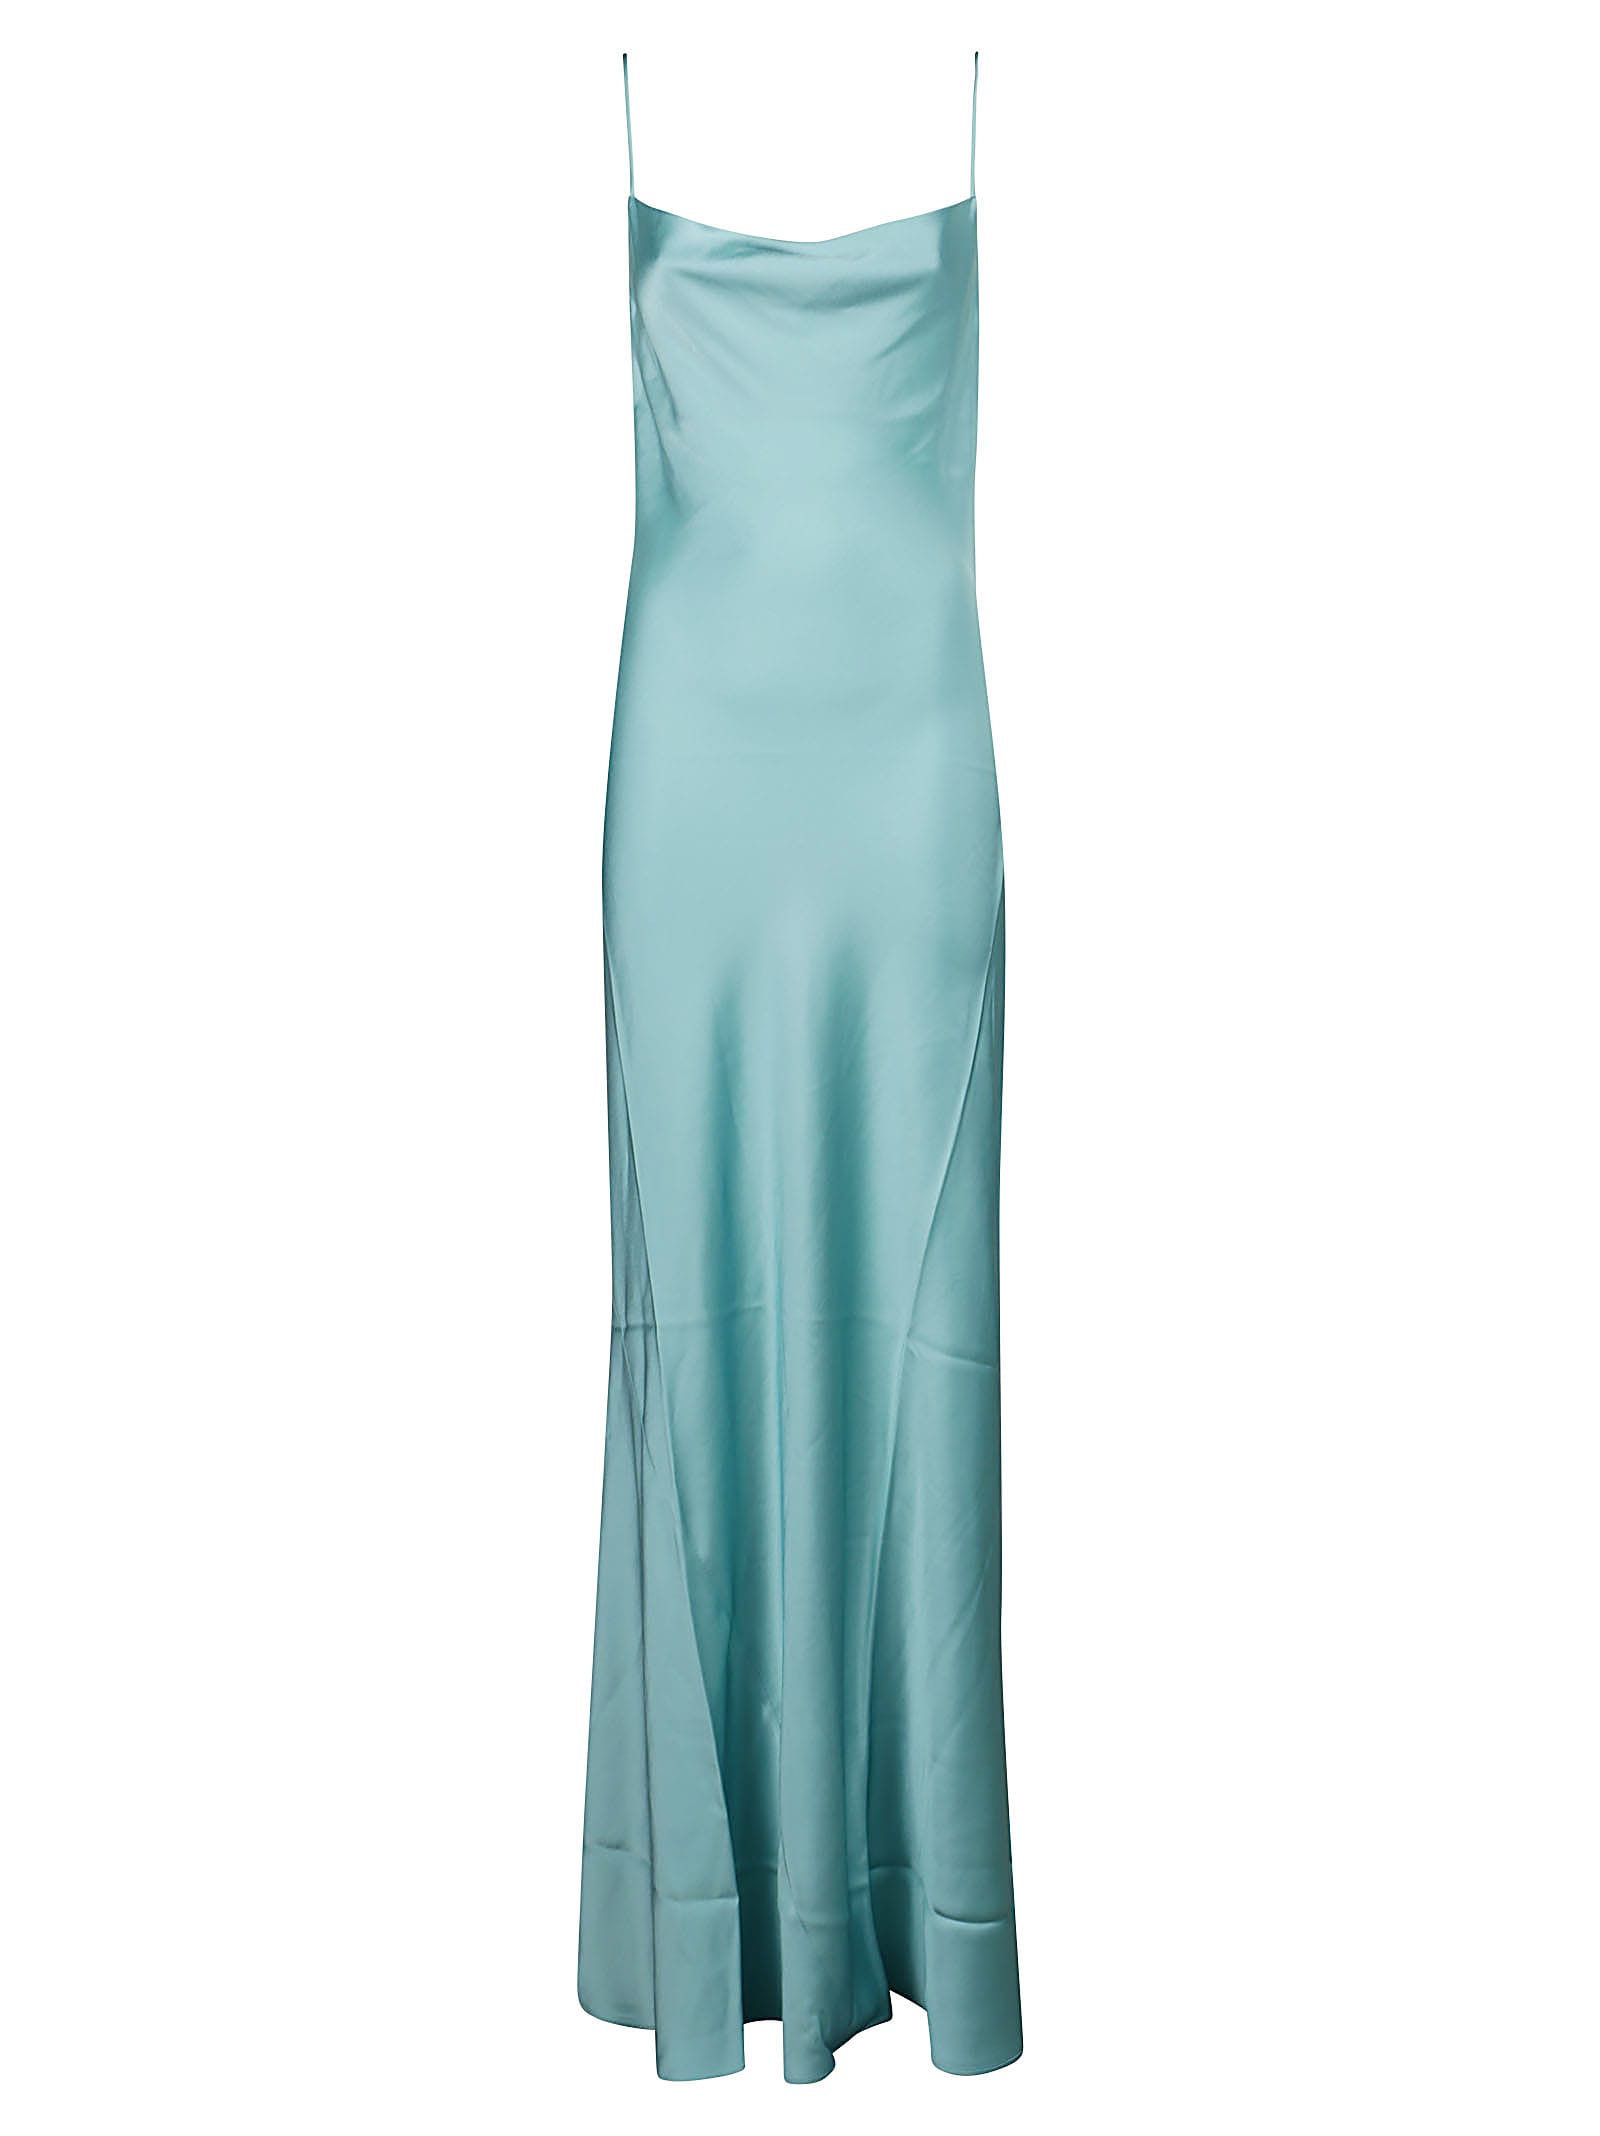 The Andamane Isabelle Maxi Slip Dress